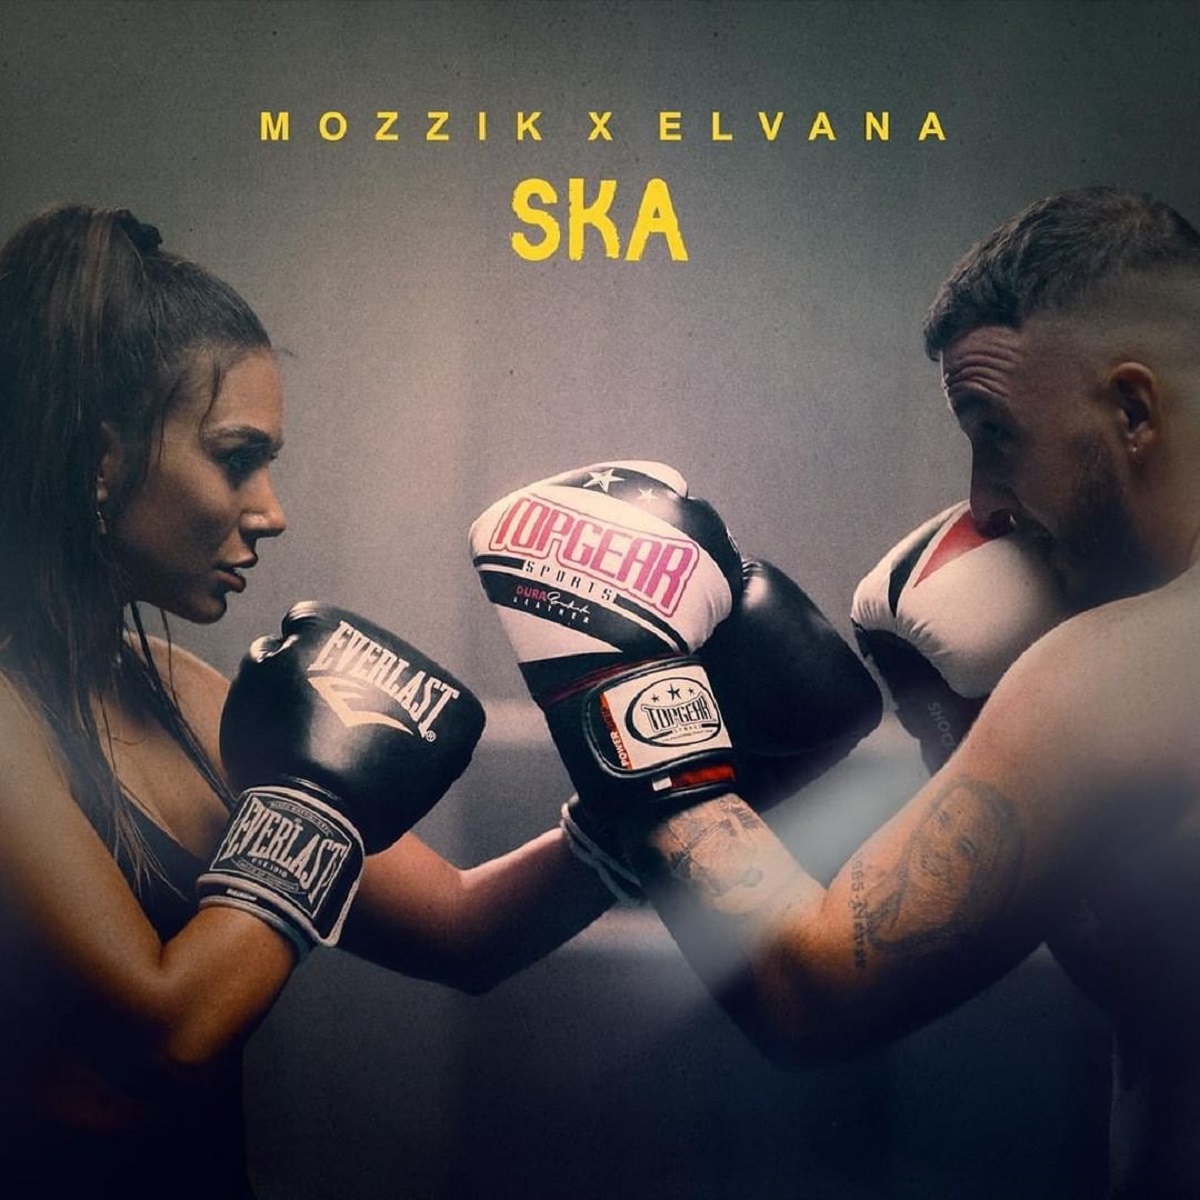 “S’ka” më pritje, Mozzik dhe Elvana zbulojnë datën e publikimit të këngës së shumëpritur